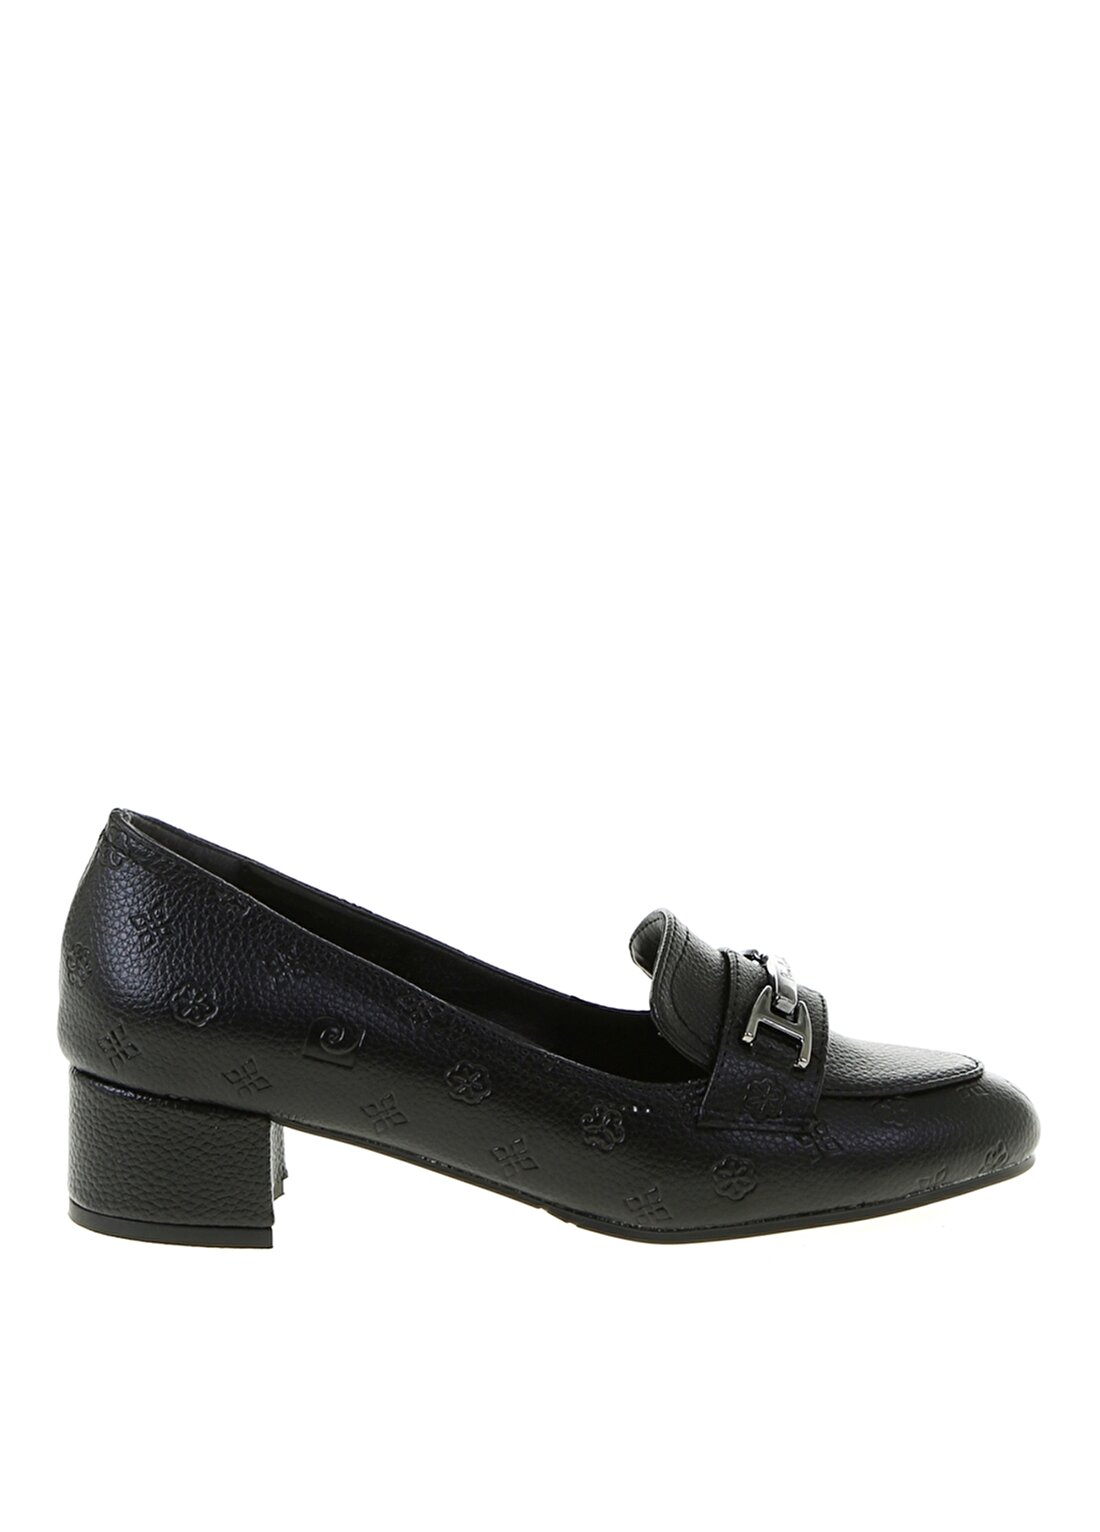 Pierre Cardin Koyu Siyah Kadın Topuklu Ayakkabı